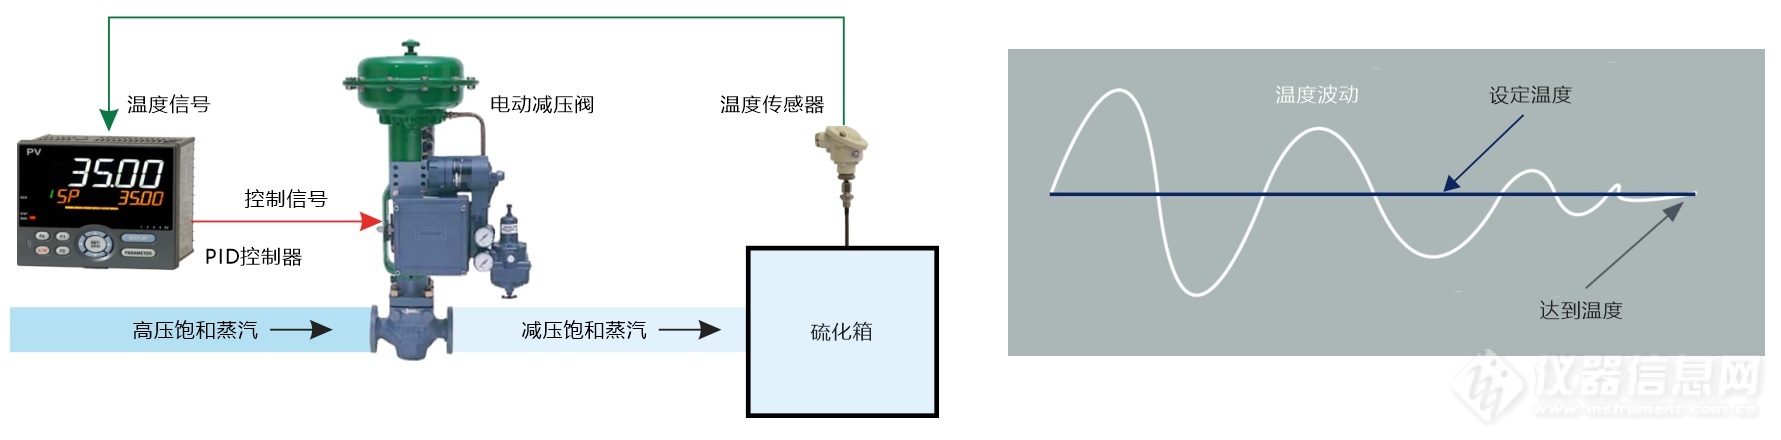 01.传统单回路蒸汽温度控制结构示意图.jpg